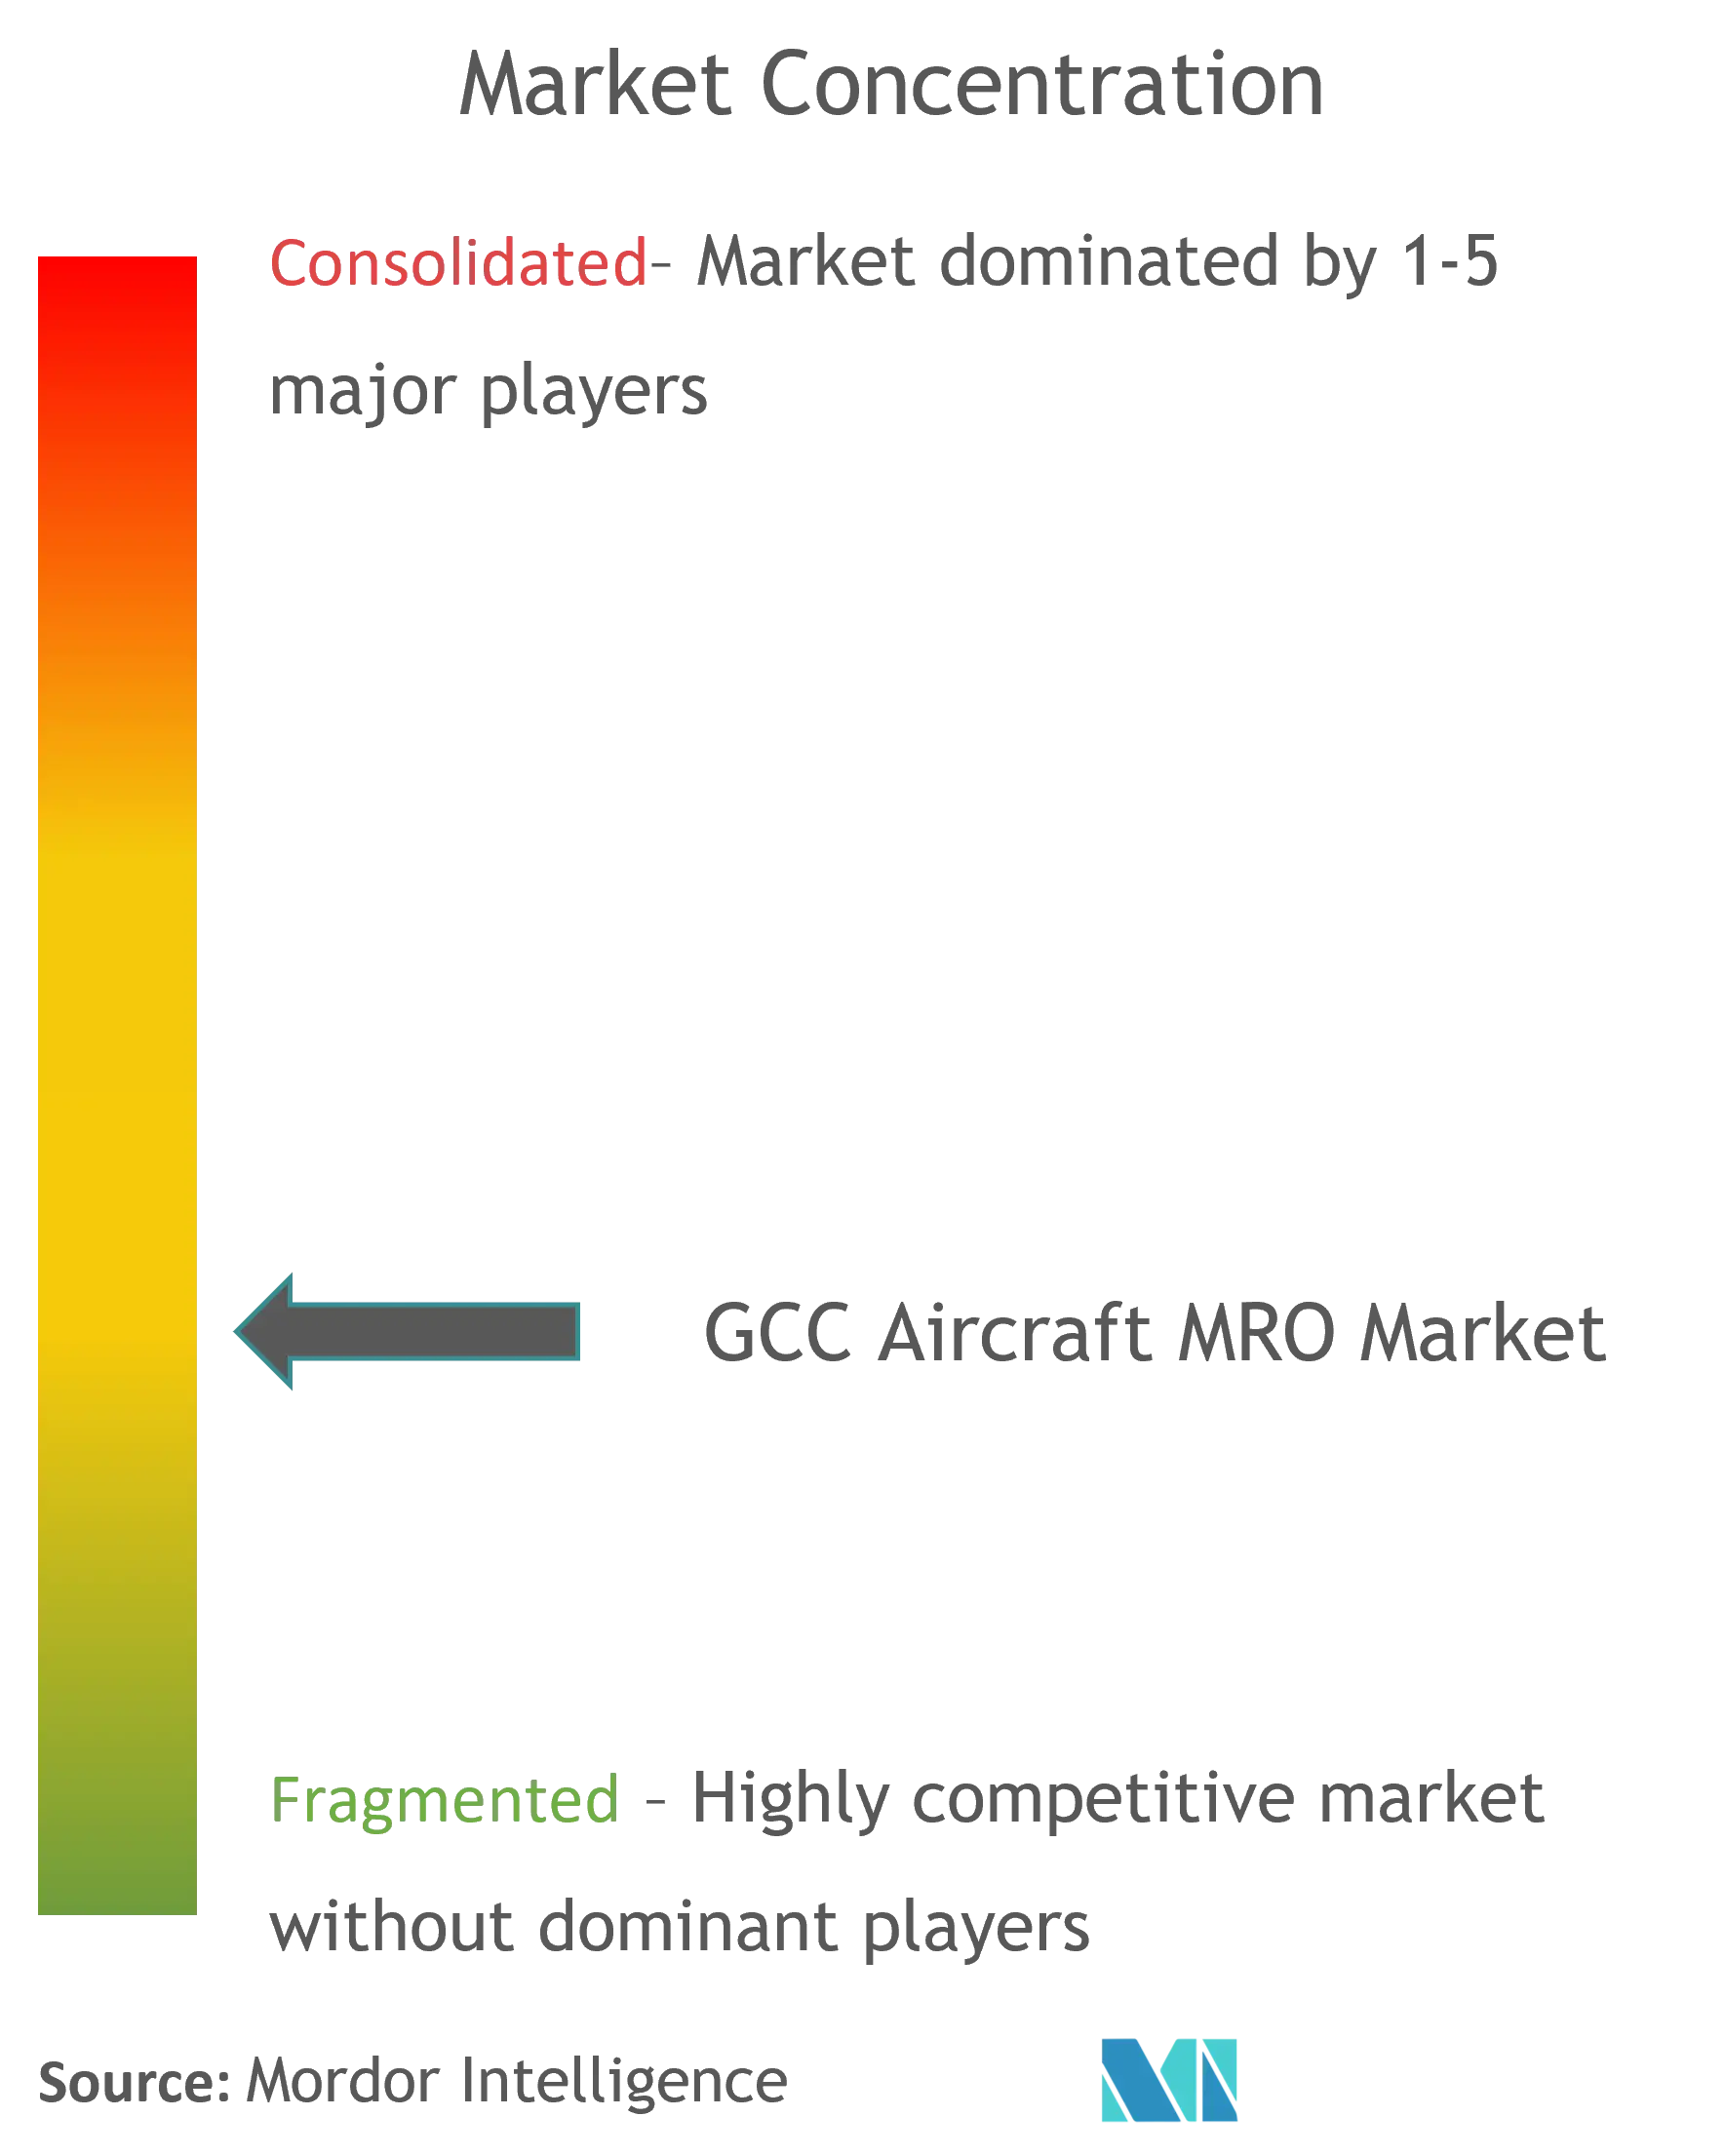 gcc aircraft mro market CL updated.png